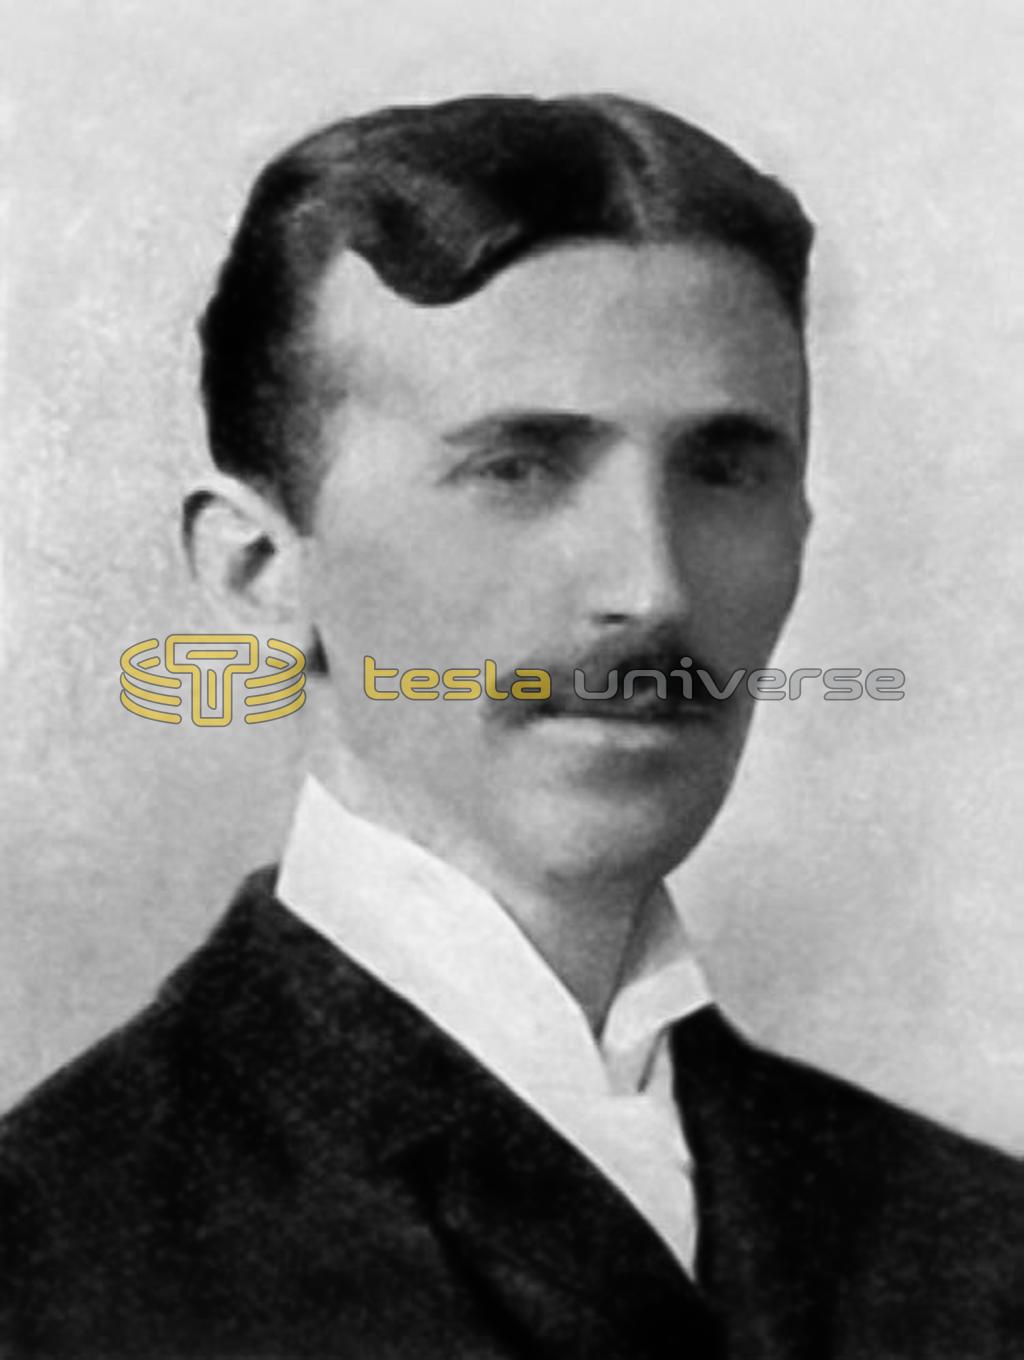 A rarely seen portrait of Nikola Tesla